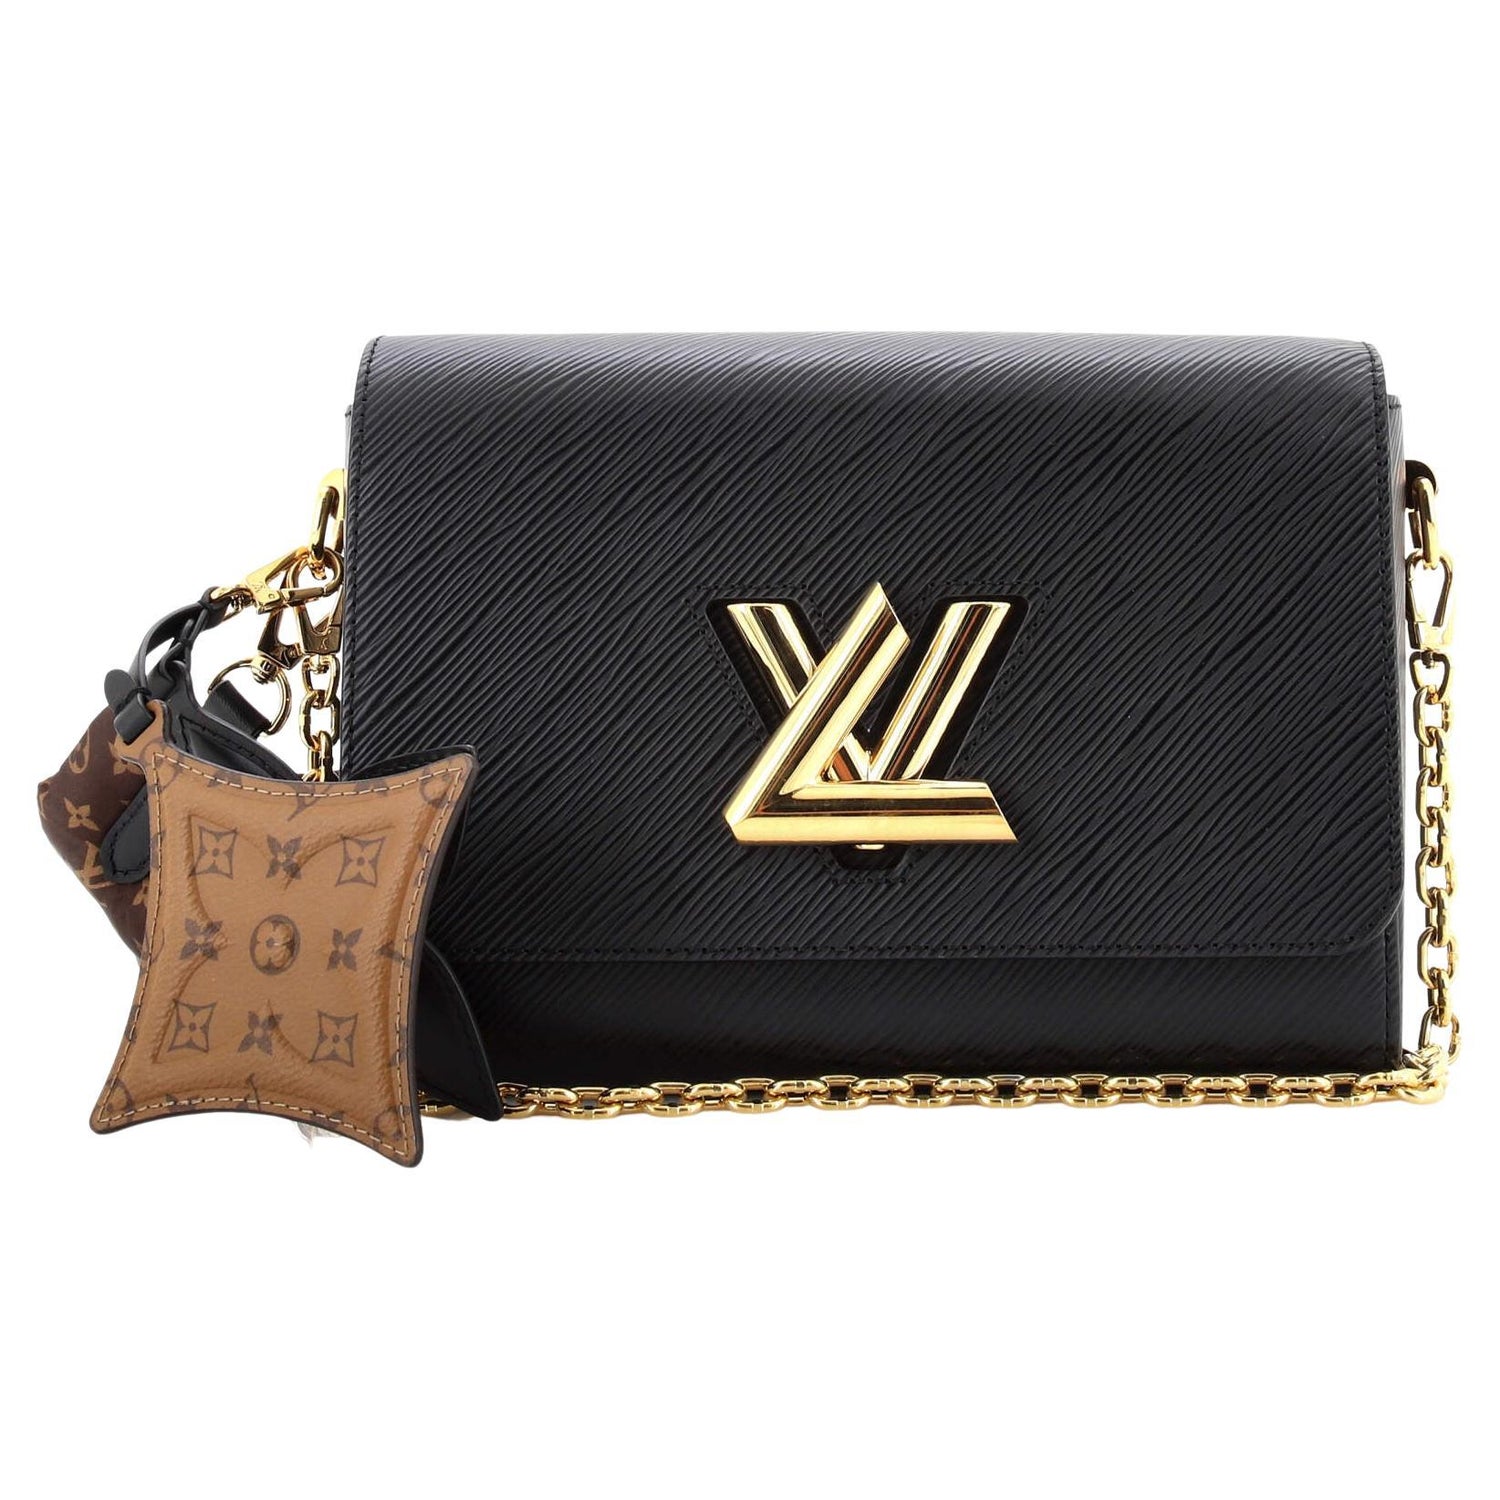 Louis Vuitton Blue Denim Aztec EPI Leather Twist Wallet on Chain Bag